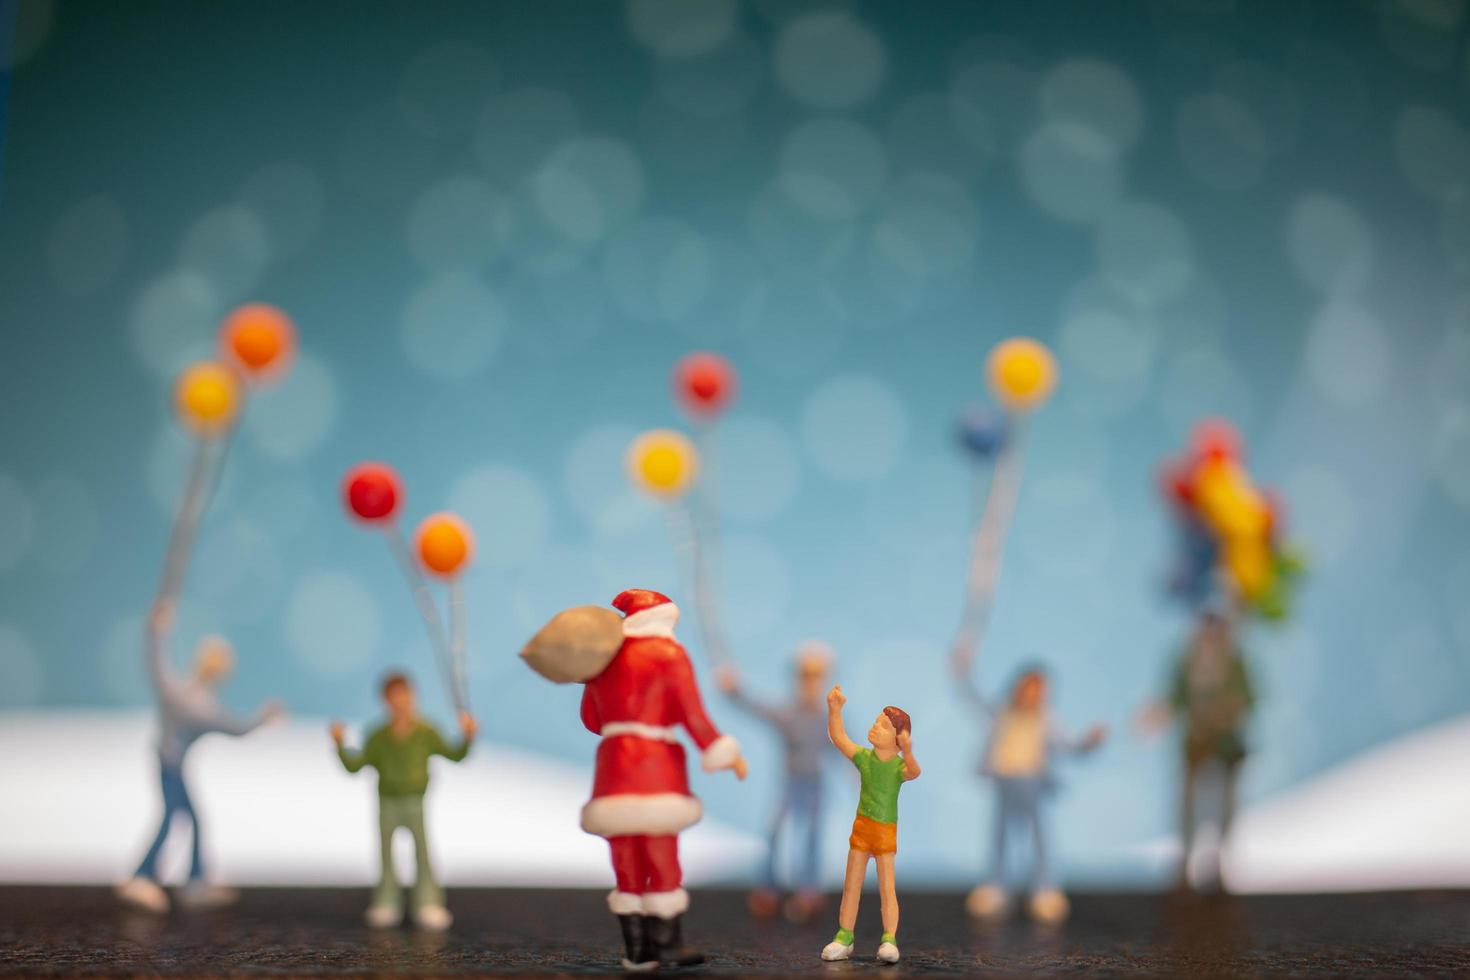 Père Noël miniature et enfants tenant des ballons, joyeux Noël et bonne année concept photo